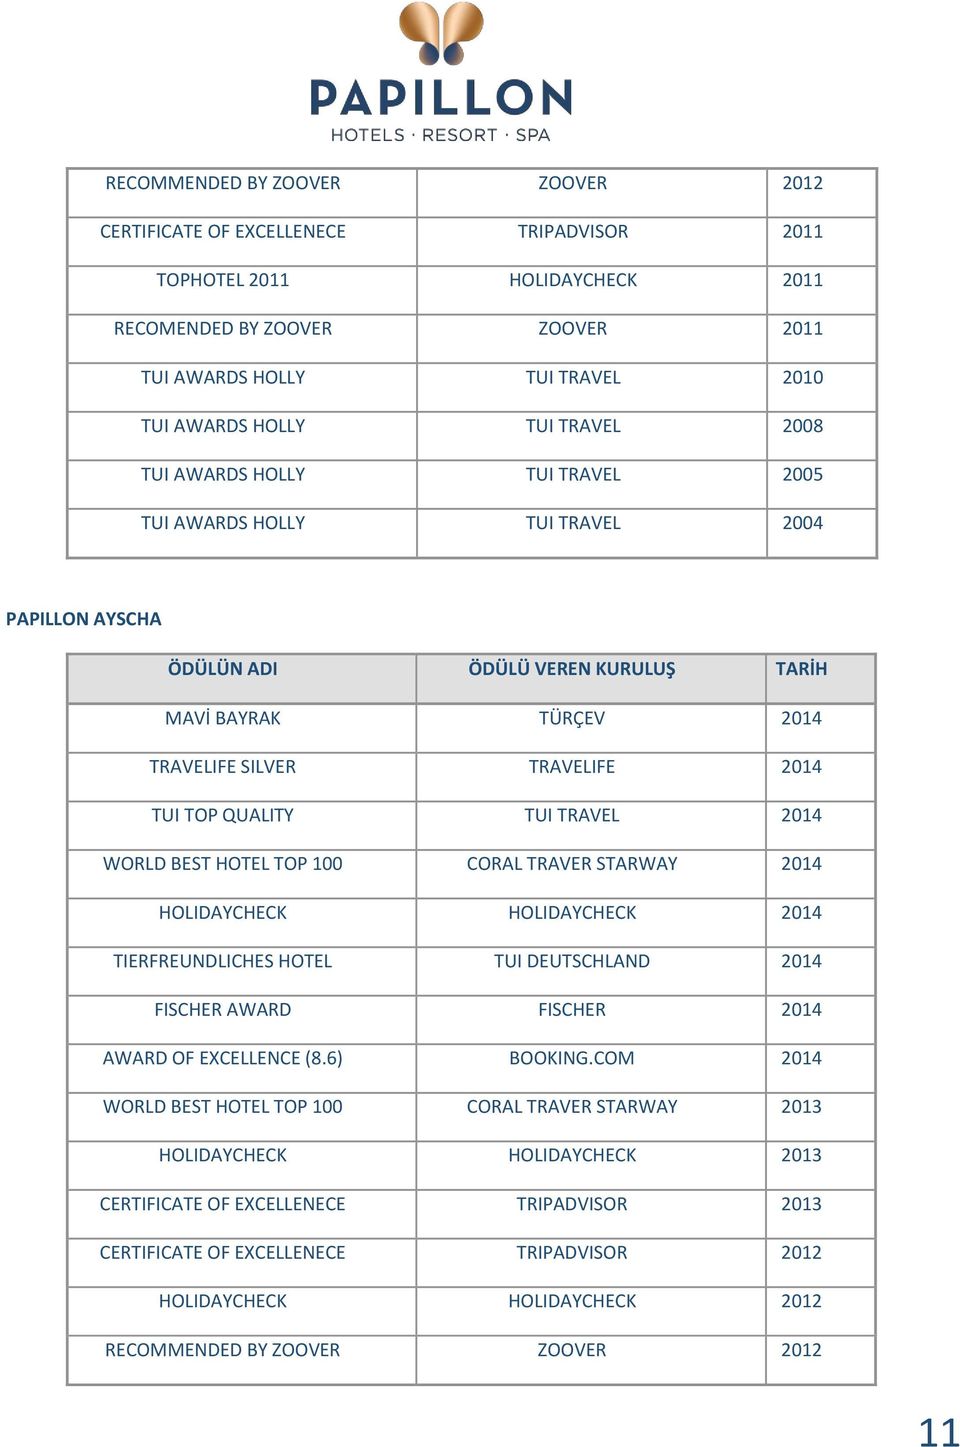 QUALITY TUI TRAVEL 2014 WORLD BEST HOTEL TOP 100 CORAL TRAVER STARWAY 2014 HOLIDAYCHECK HOLIDAYCHECK 2014 TIERFREUNDLICHES HOTEL TUI DEUTSCHLAND 2014 FISCHER AWARD FISCHER 2014 AWARD OF EXCELLENCE (8.